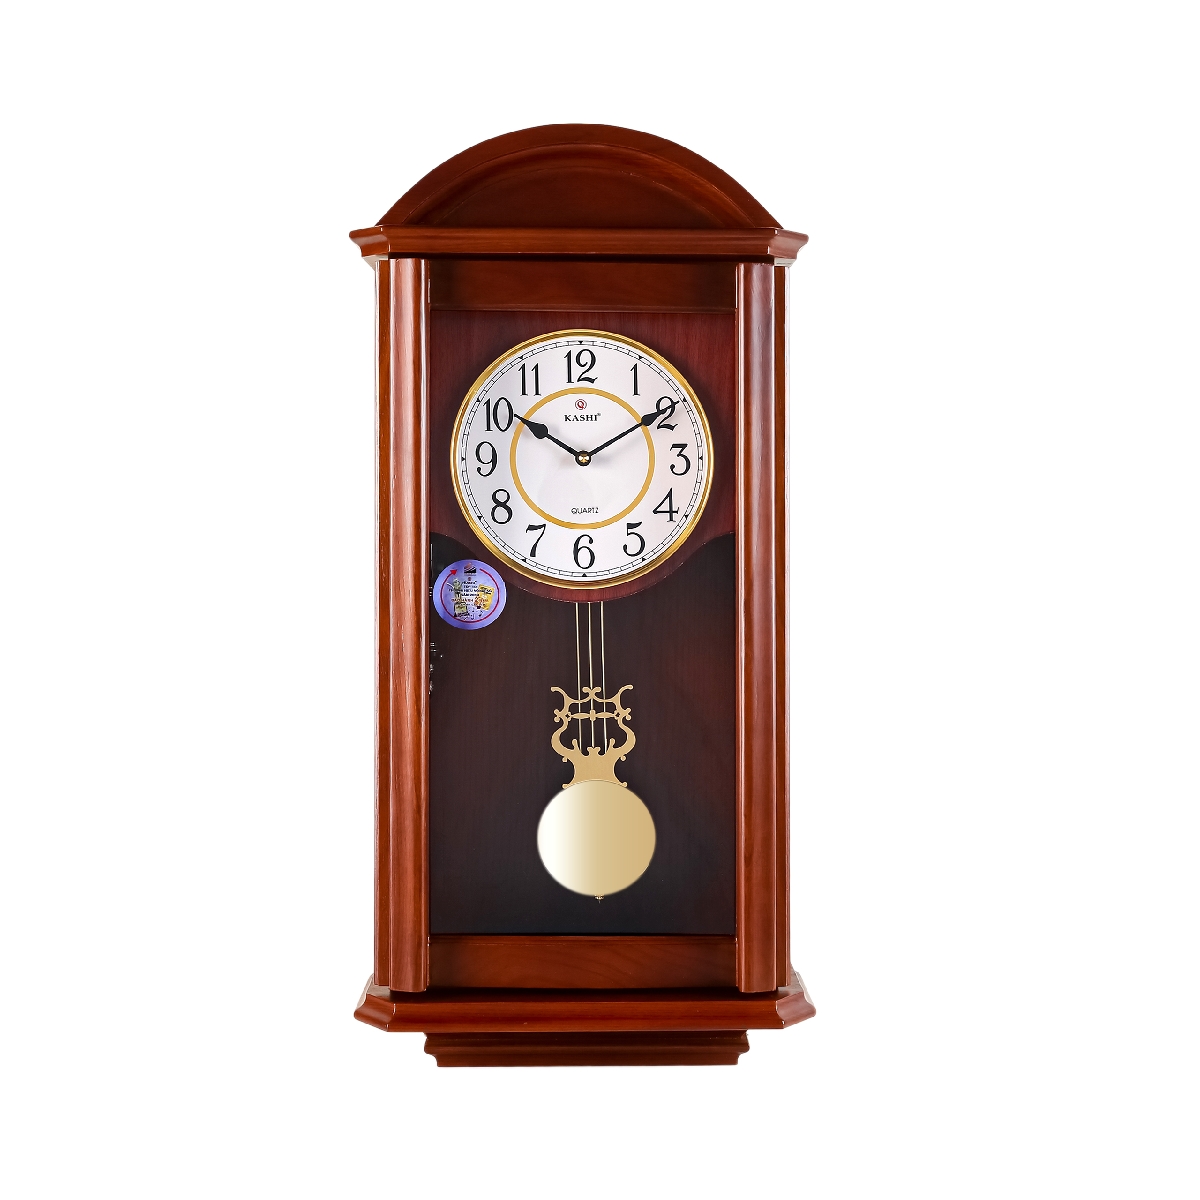 Đồng hồ treo tường quả lắc New HM833 số la mã Kashi Clock